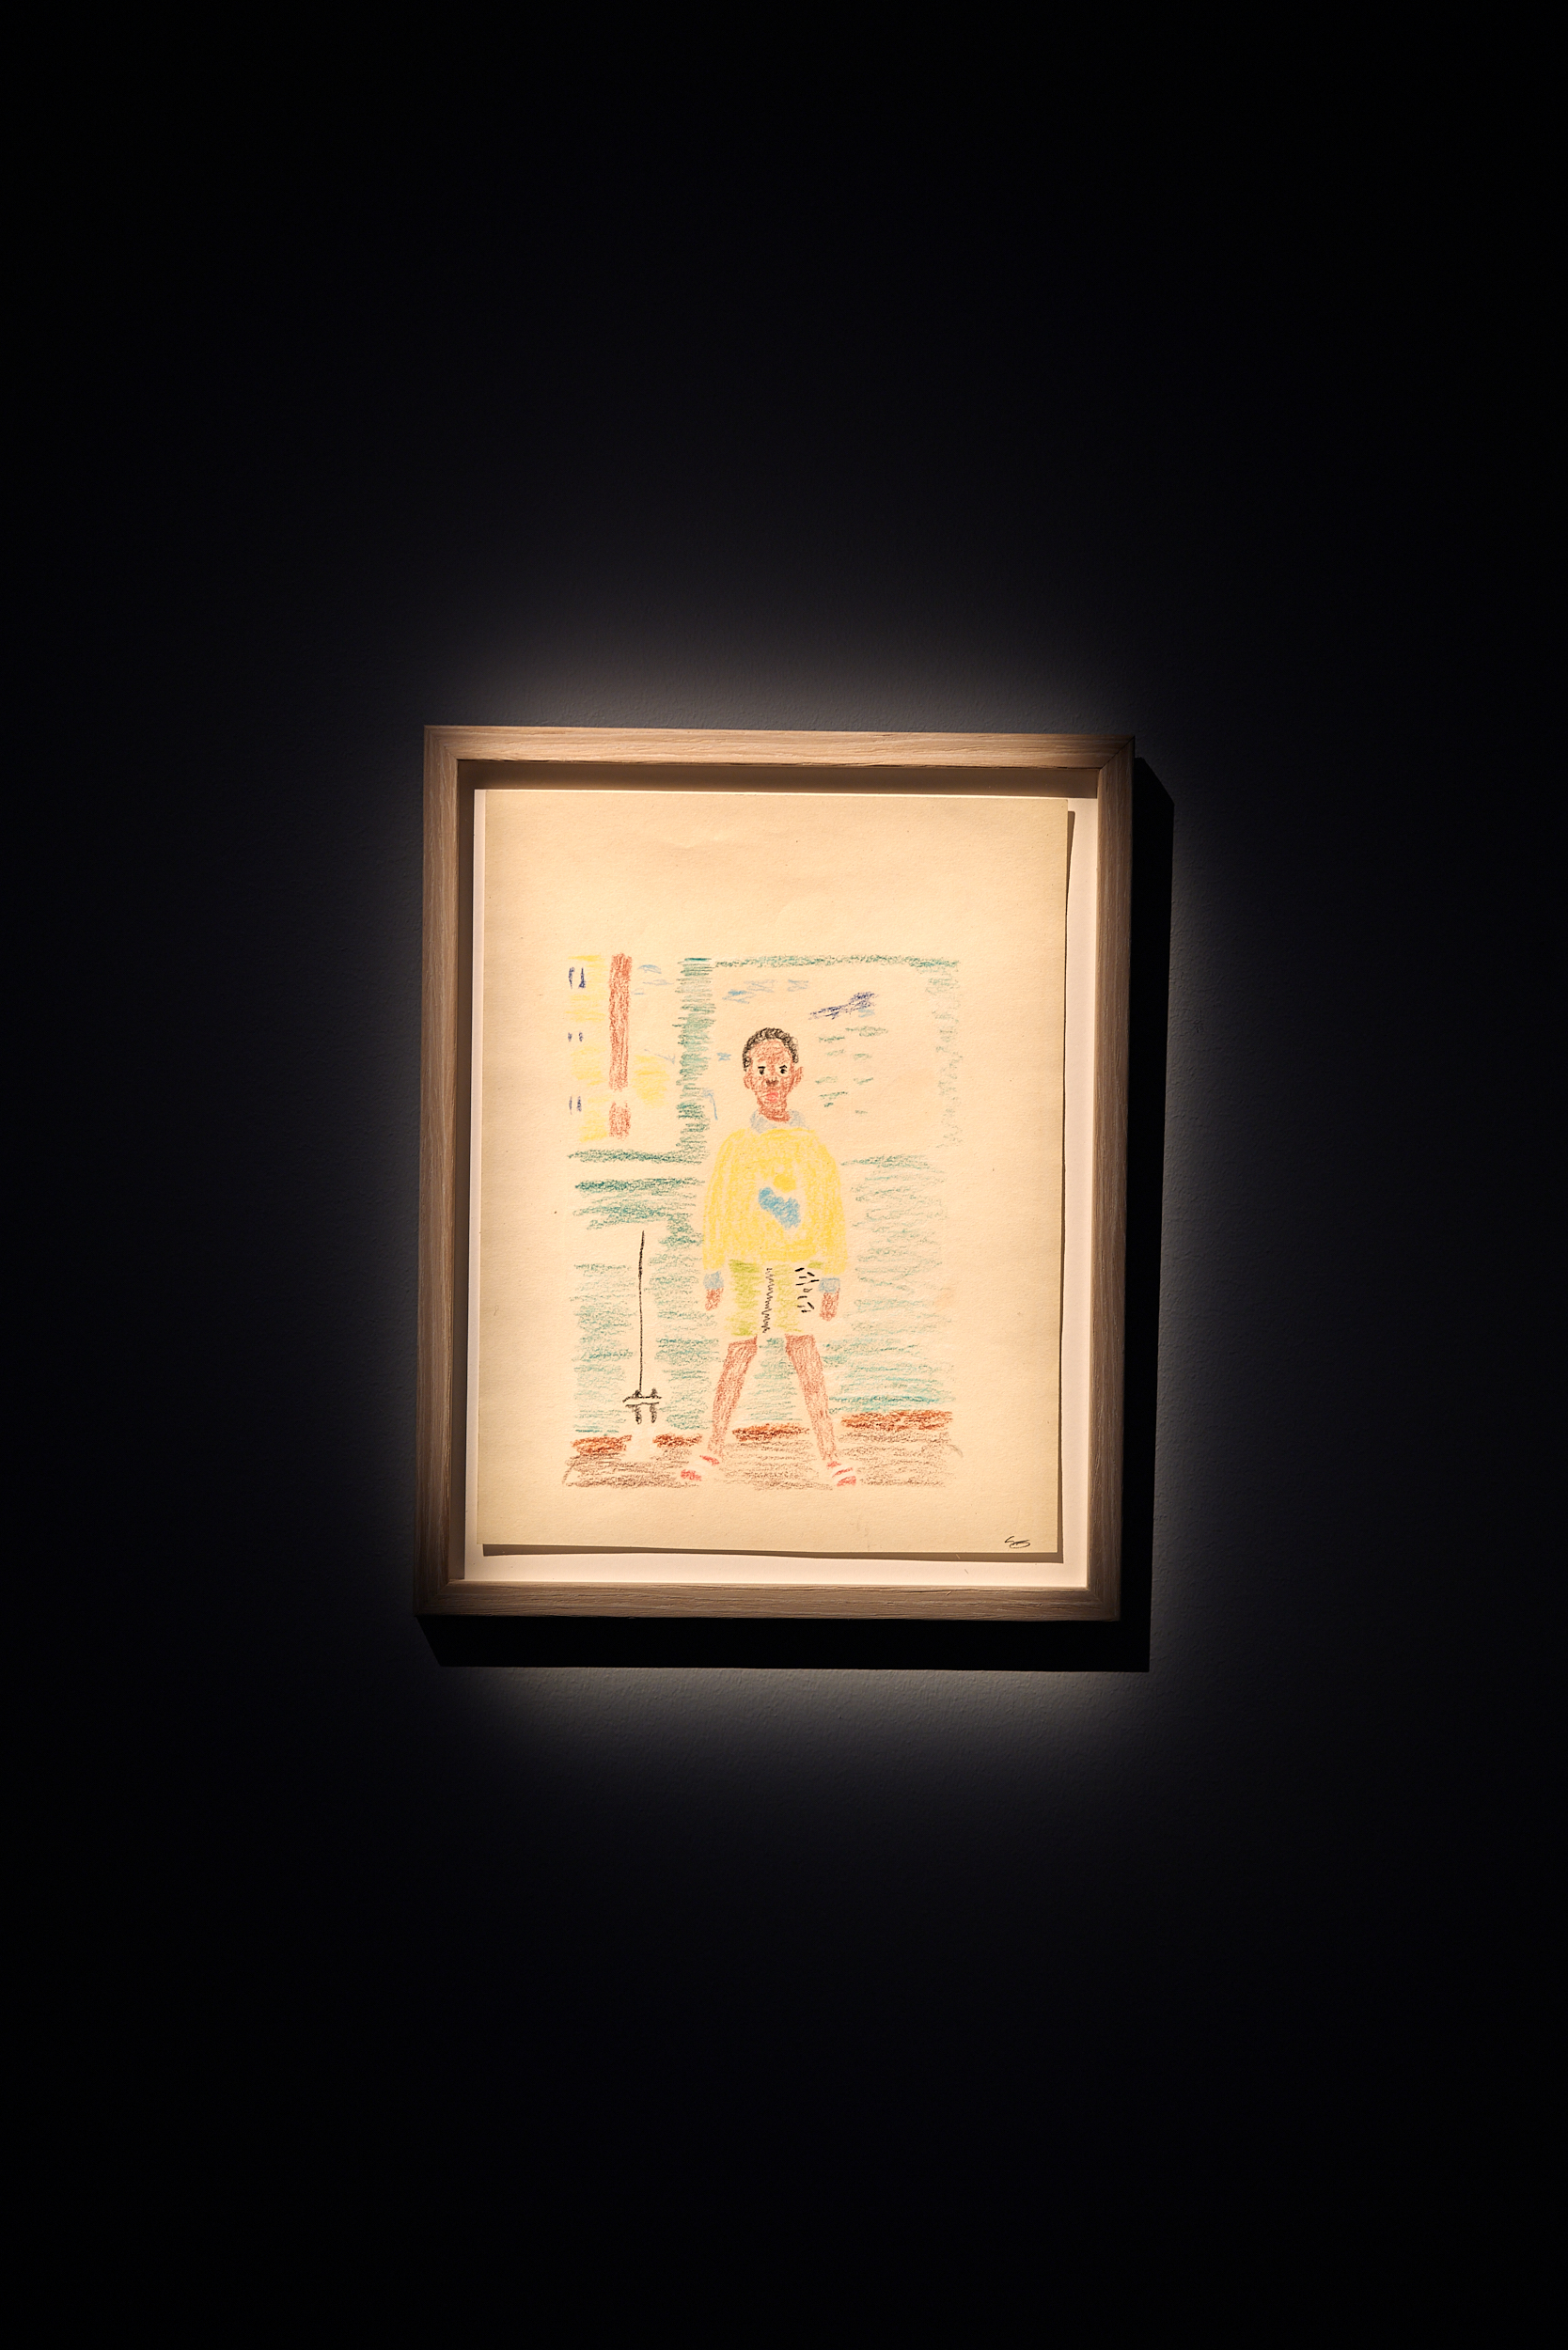 En inramad teckning föreställande ett barn i gul tröja och gula shorts.